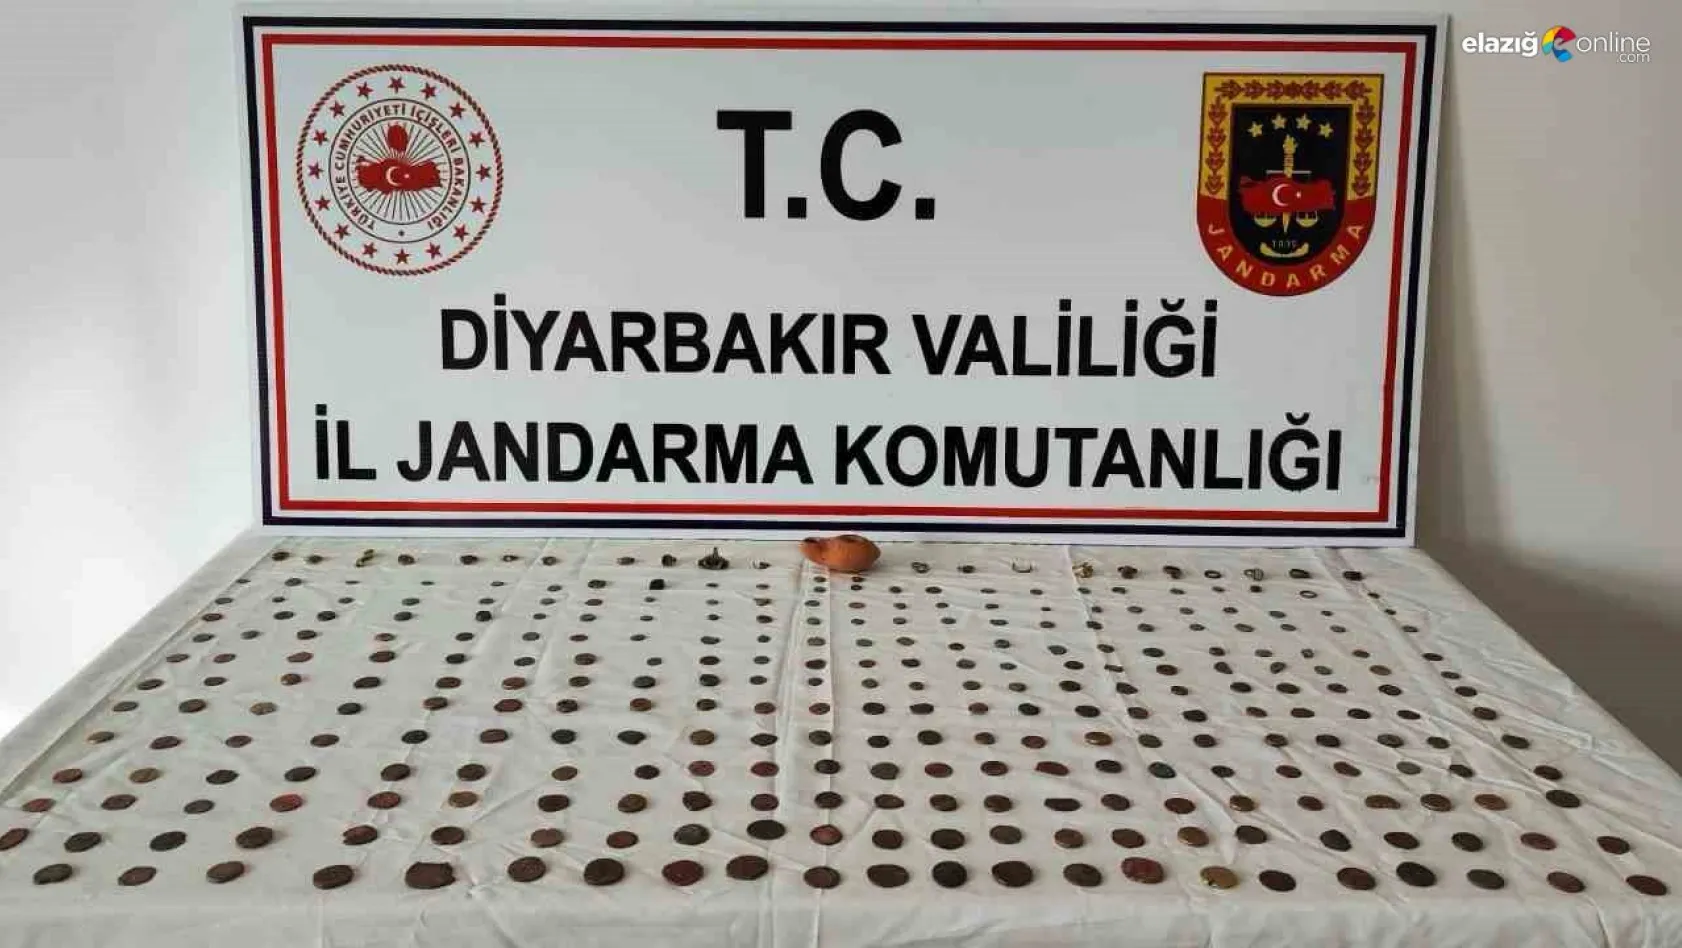 Diyarbakır'da 298 adet tarihi eser ele geçirildi: 7 gözaltı